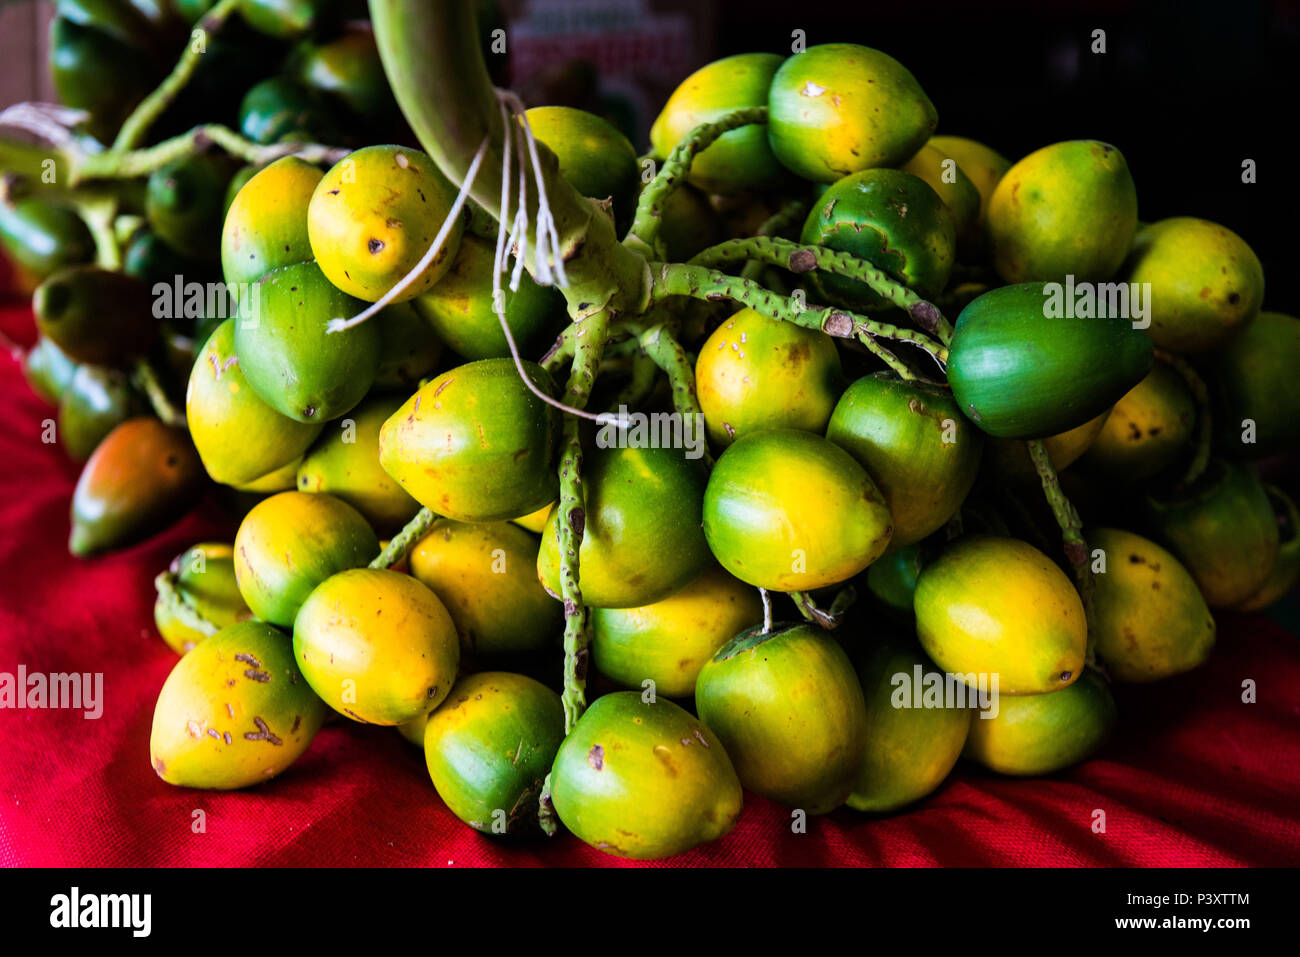 Présente, et présente-vert-amarela, Bactris gasipaes, fruta da Região régional amazônica, durante feira de produtos em Iranduba tam/AM. Banque D'Images